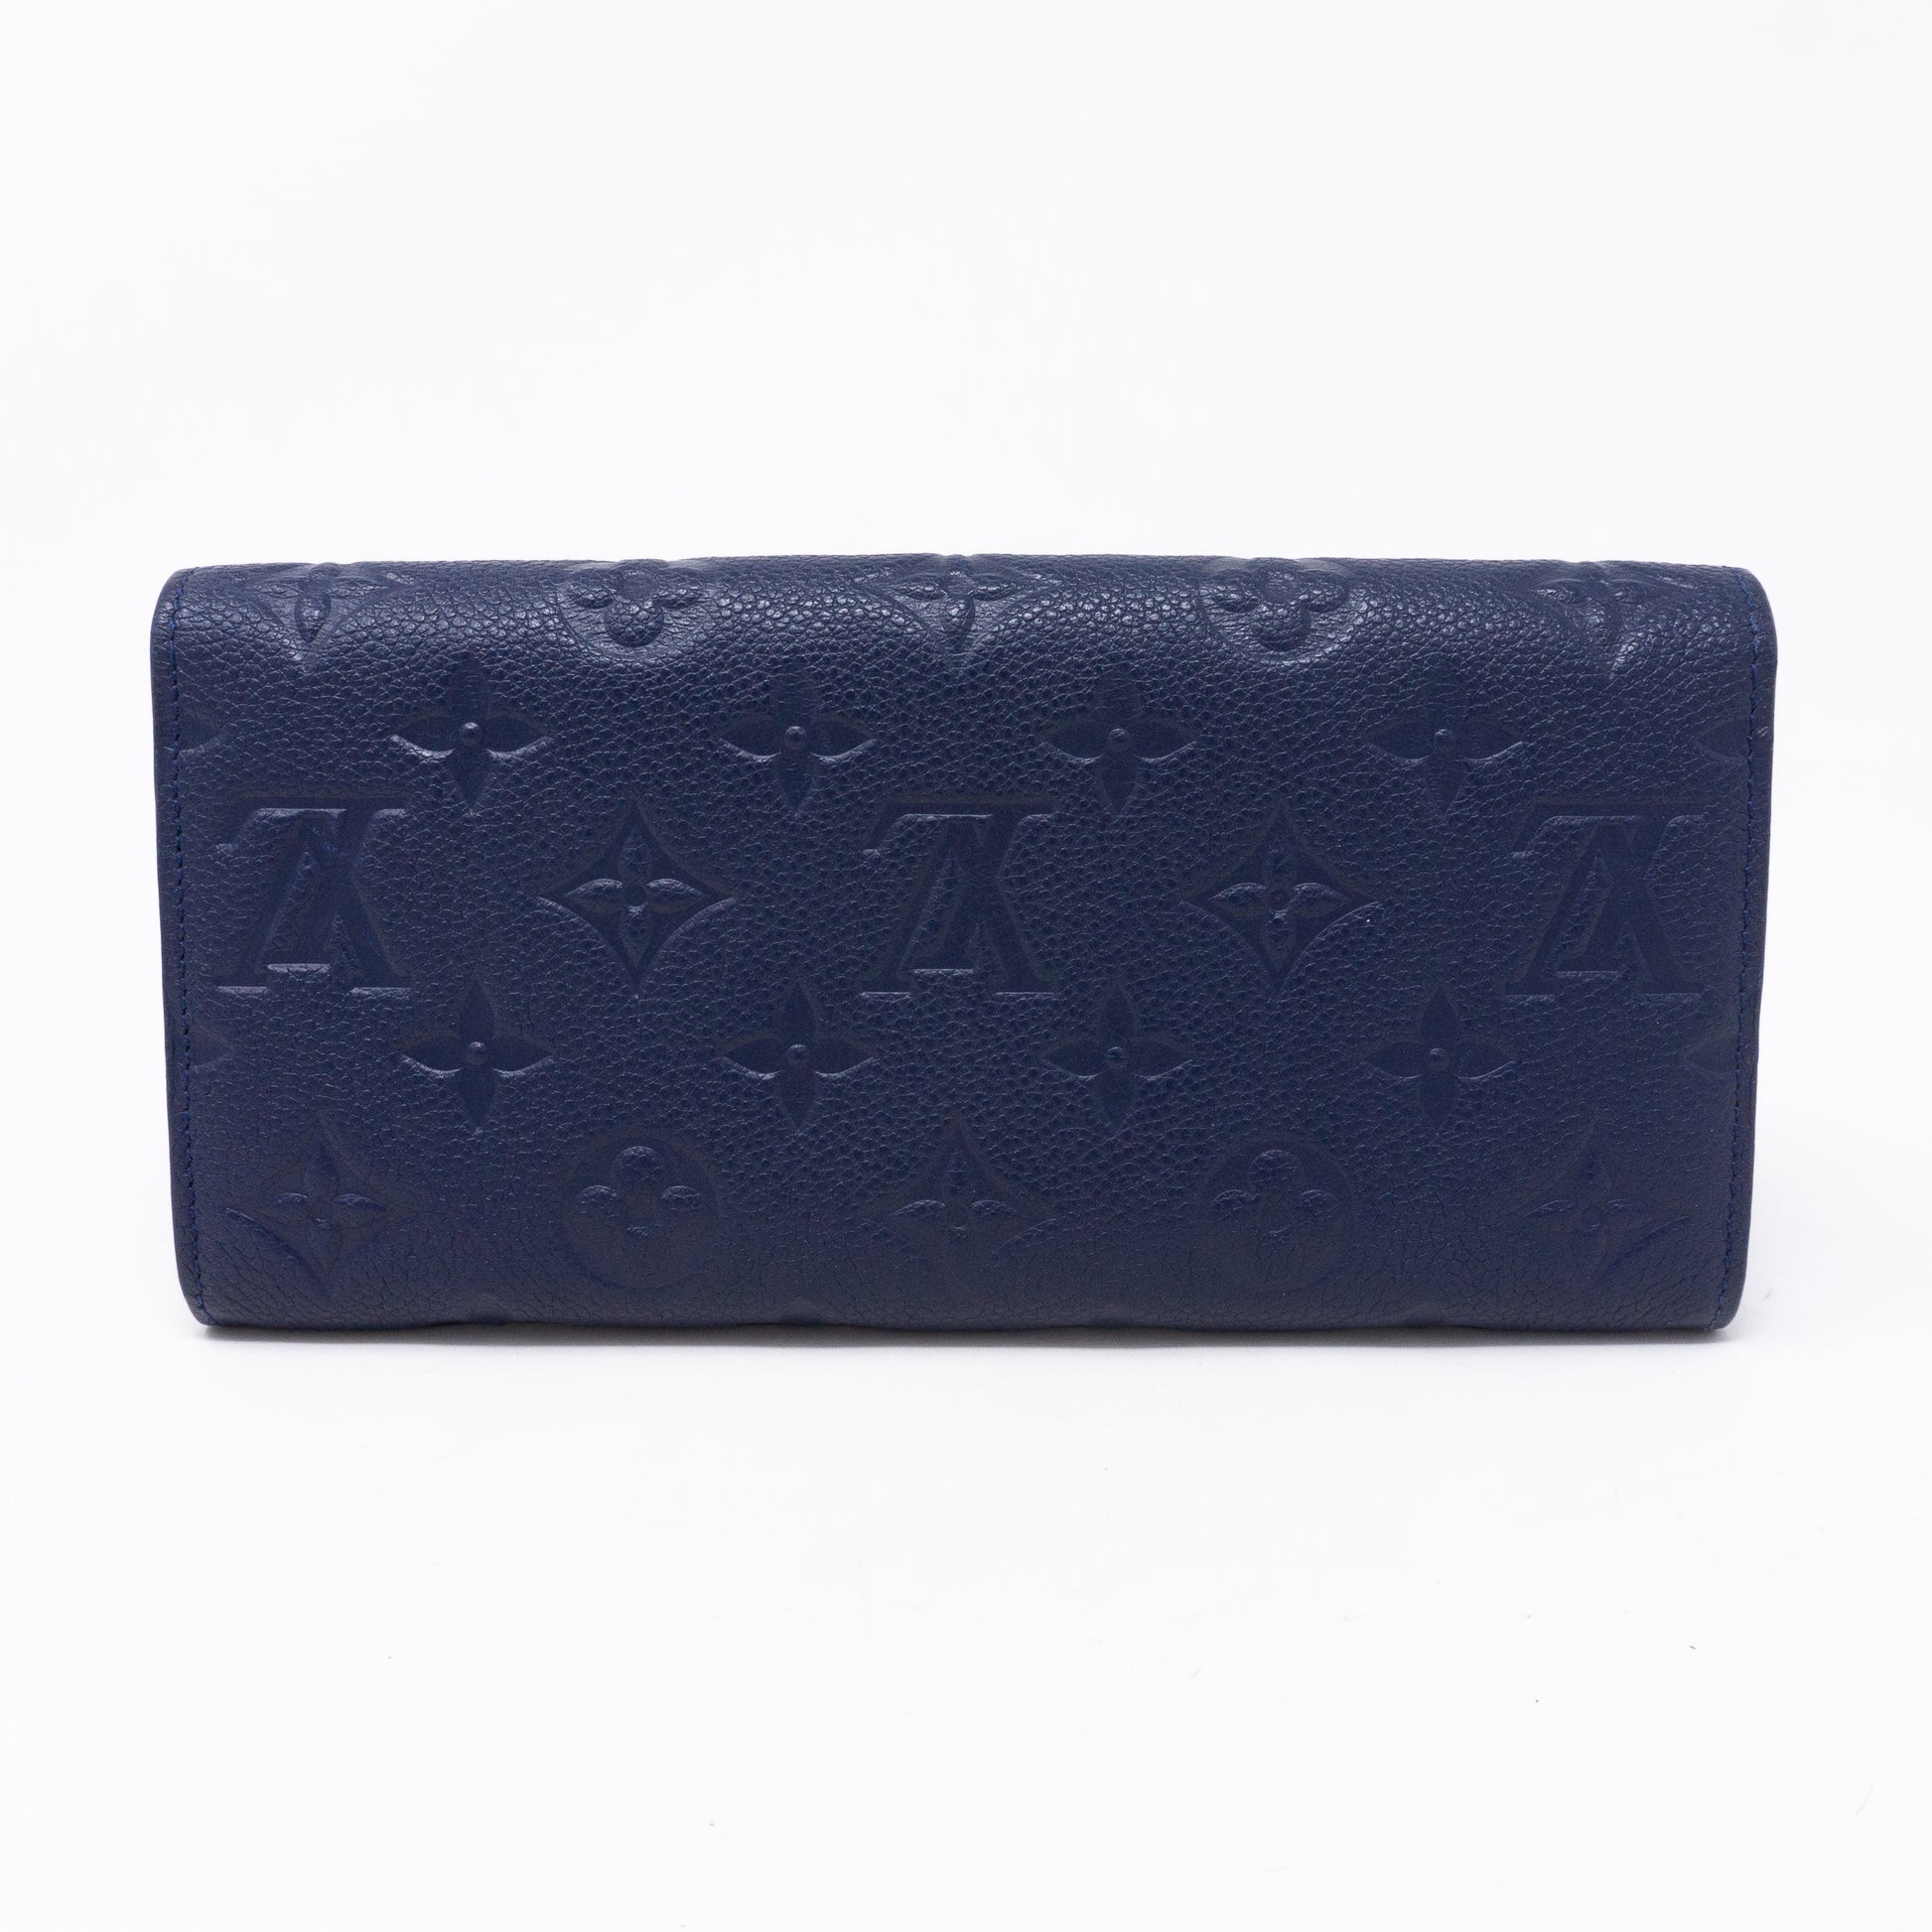 LOUIS VUITTON Curieuse Monogram Empreinte Leather Wallet Blue